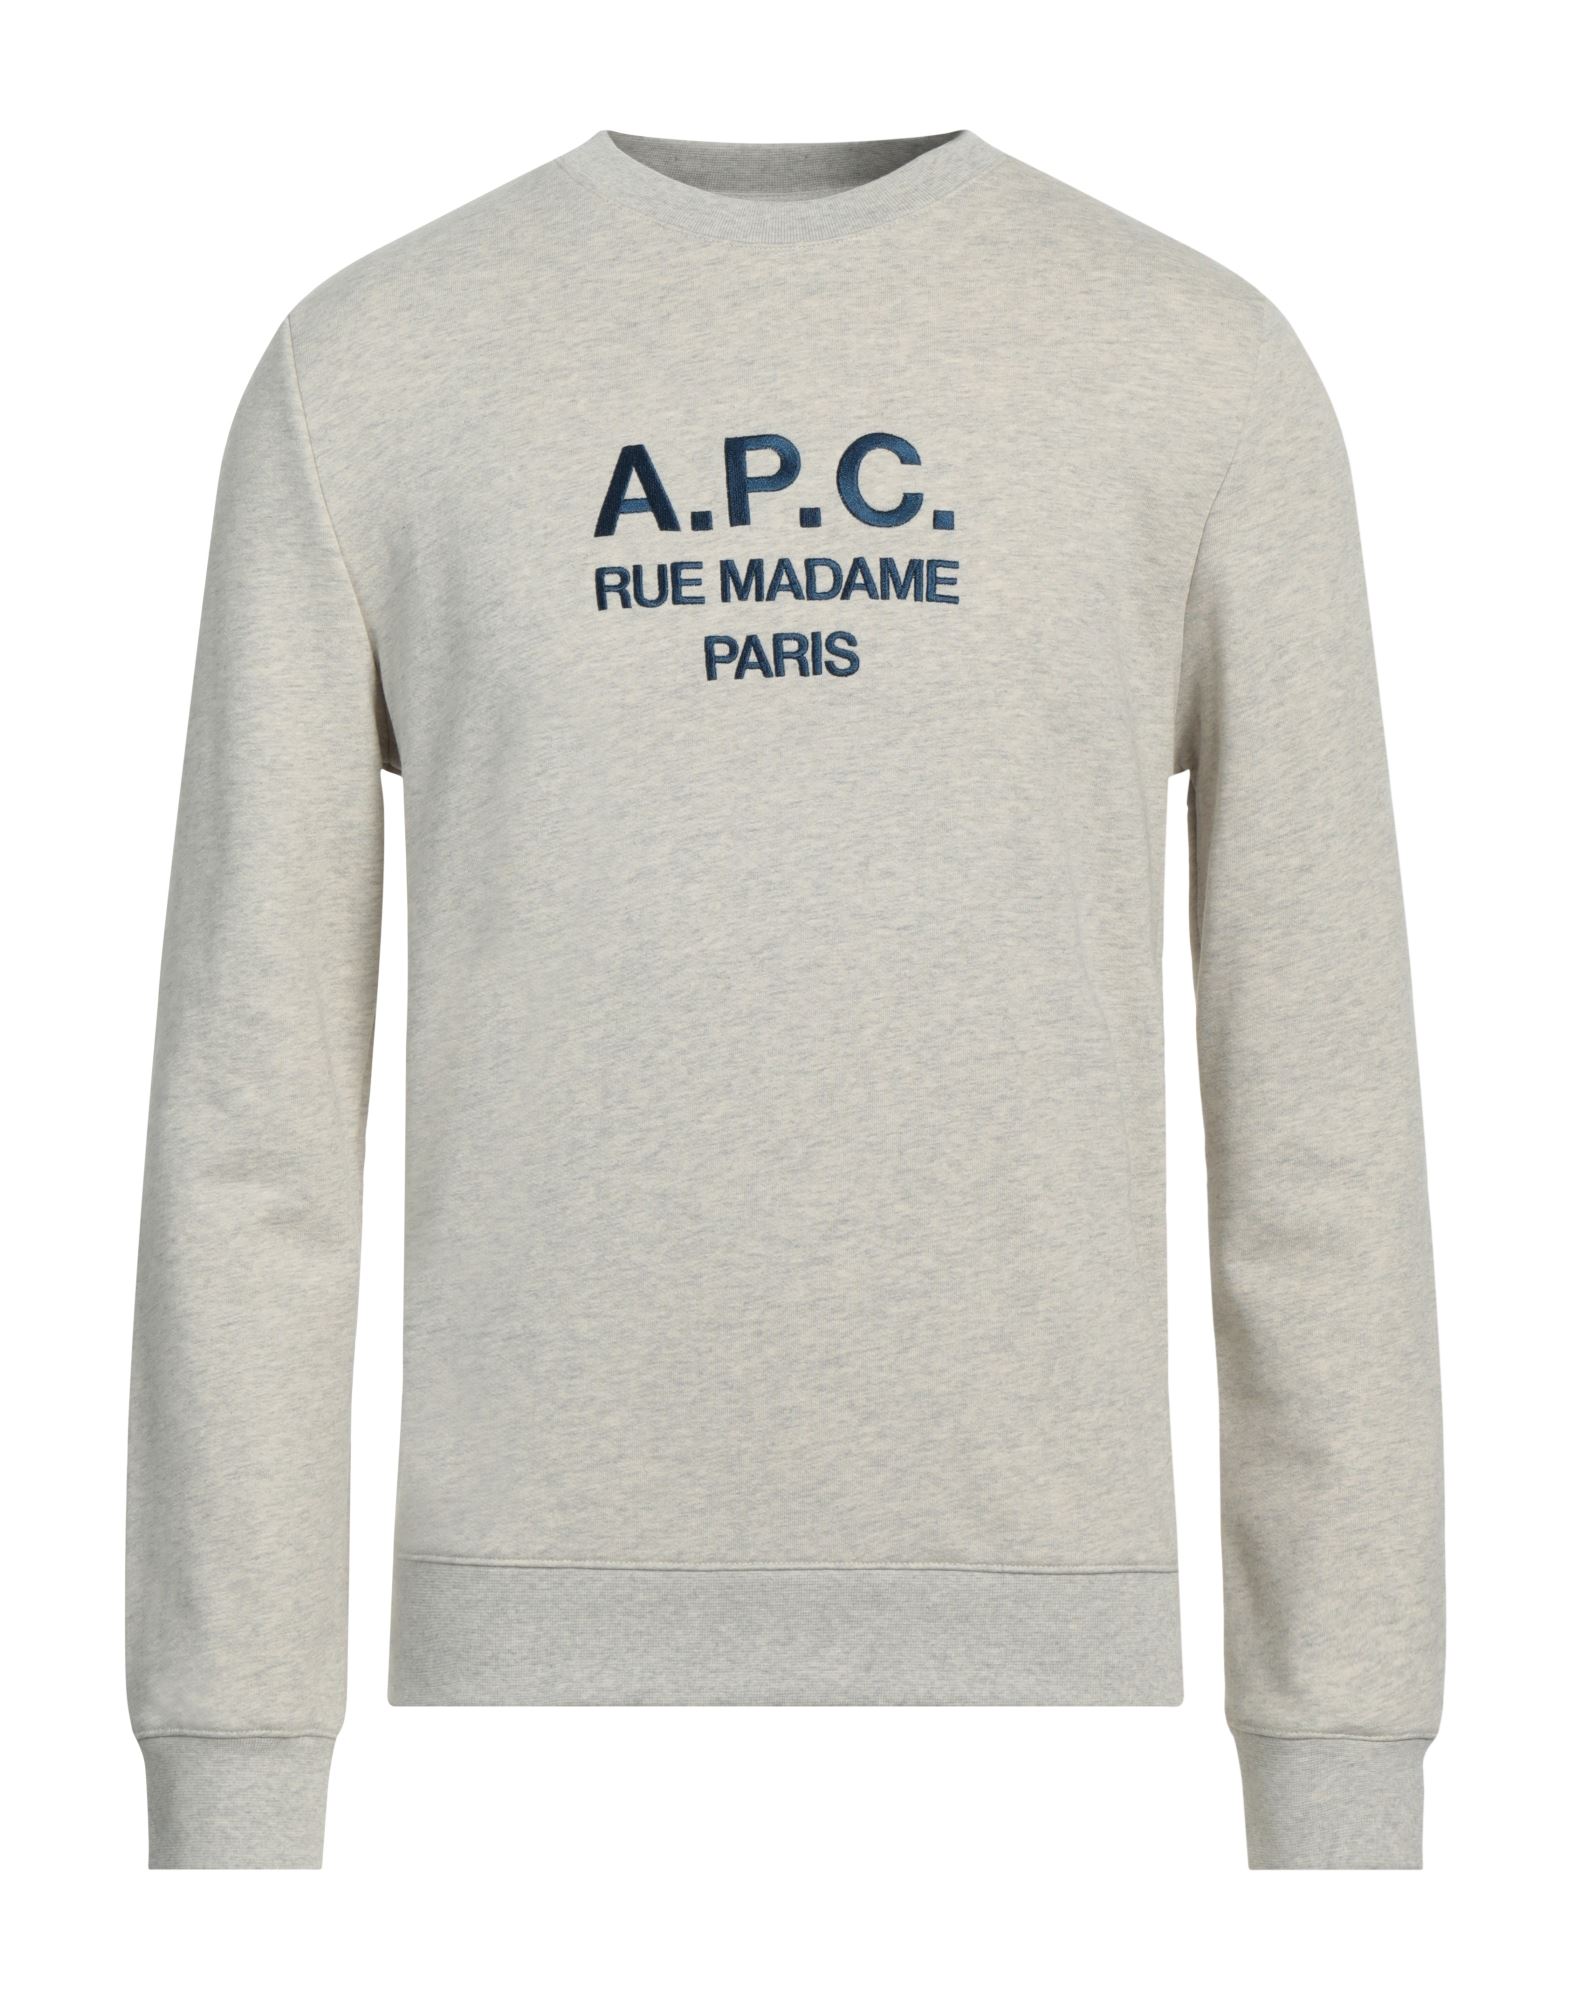 A.P.C. Sweatshirt Herren Hellgrau von A.P.C.